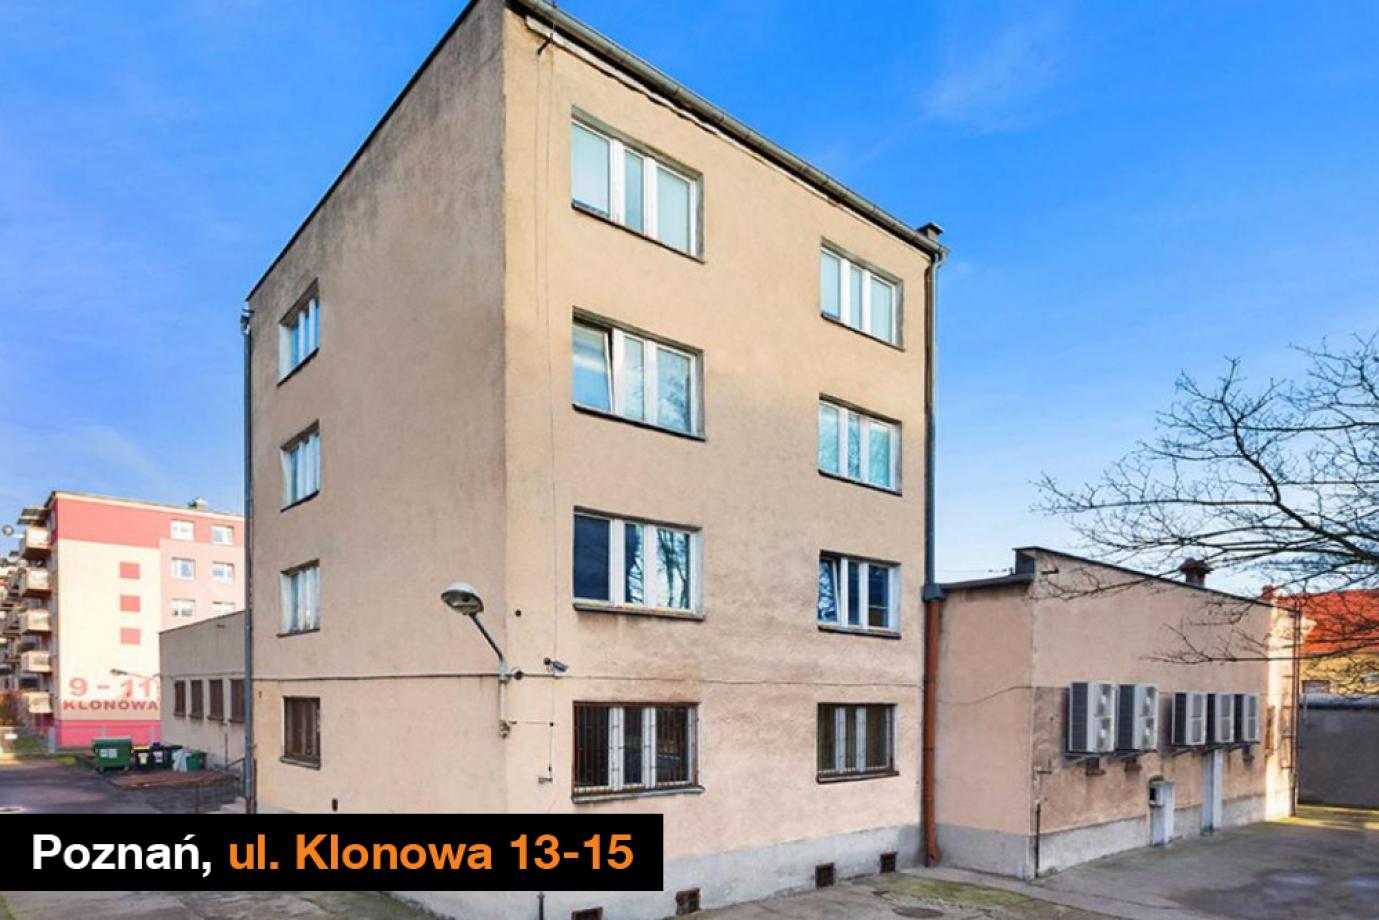 Poznań, ul. Klonowa 13-15